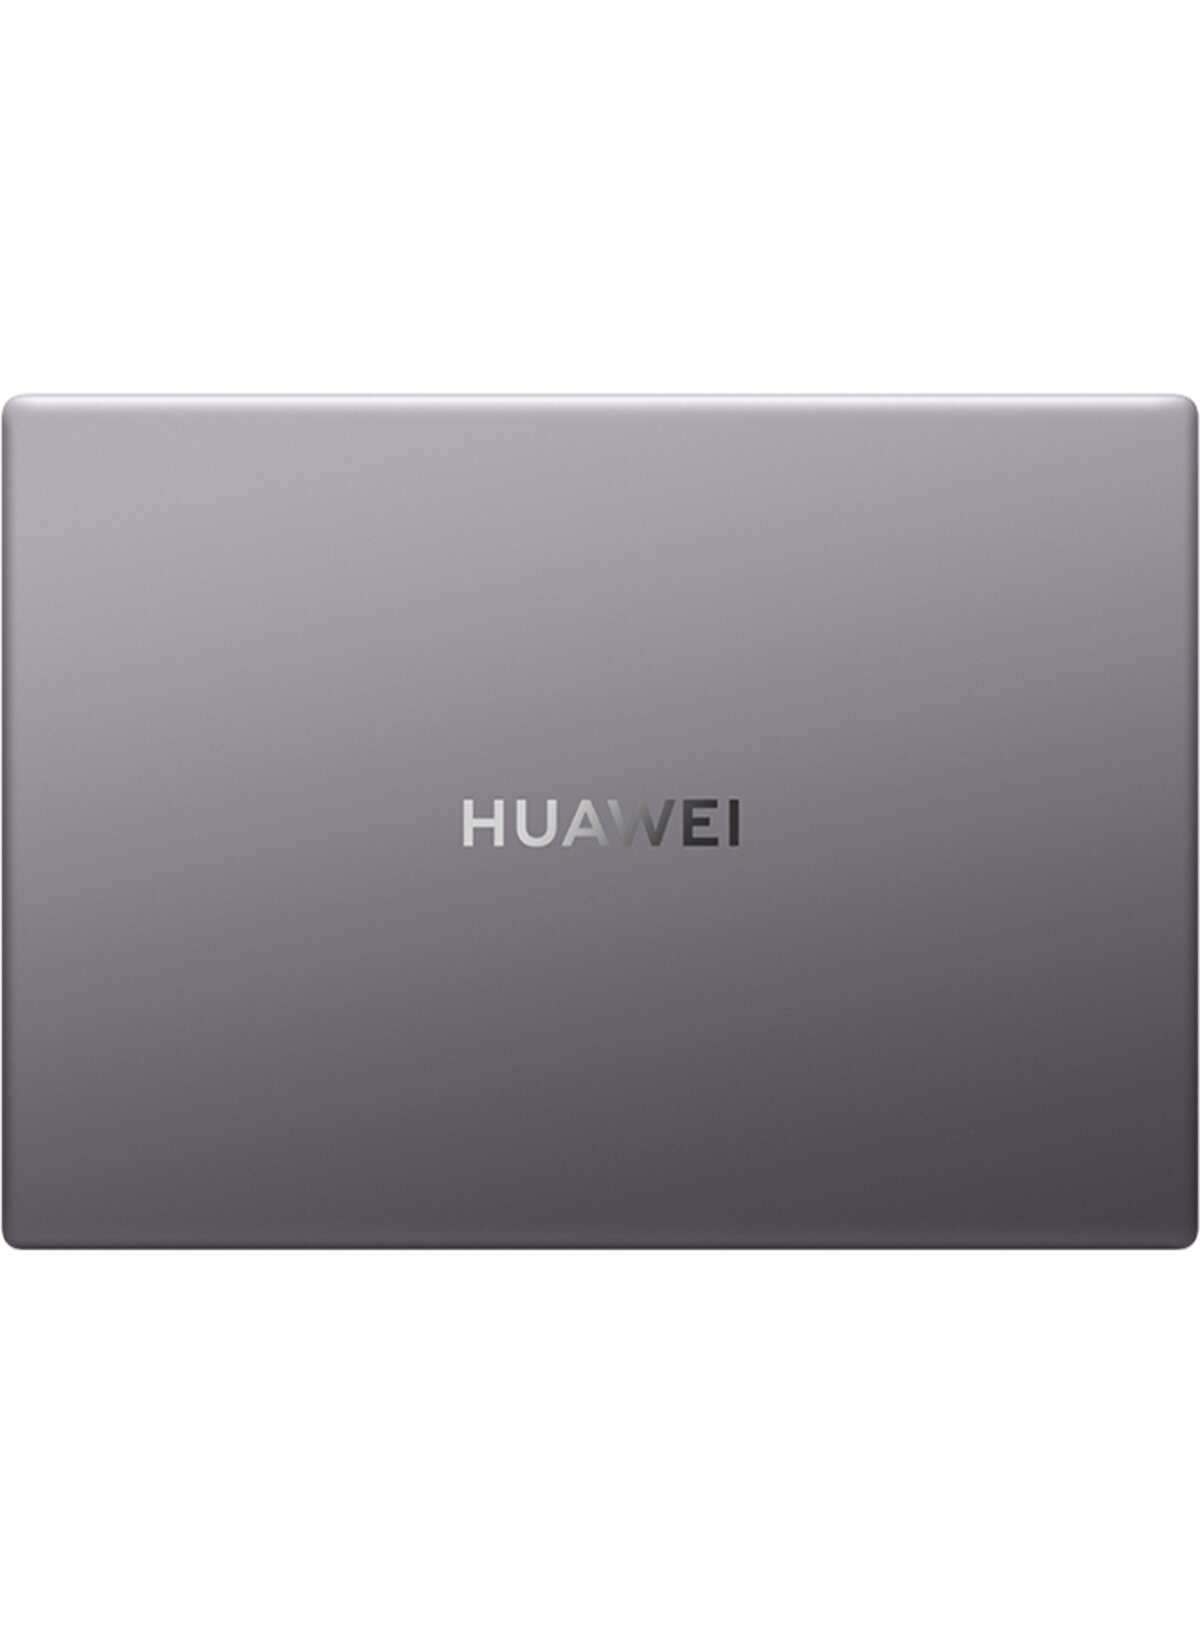 Huawei matebook d14 mdf x gray. Ноутбук Хуавей d15 wdh9. Huawei 53013eus rlef-x MATEBOOK d16. Ноутбук Huawei MATEBOOK D 15 2021 bod-wdh9 8/512gb. Huawei MATEBOOK D 14 MDF-X.